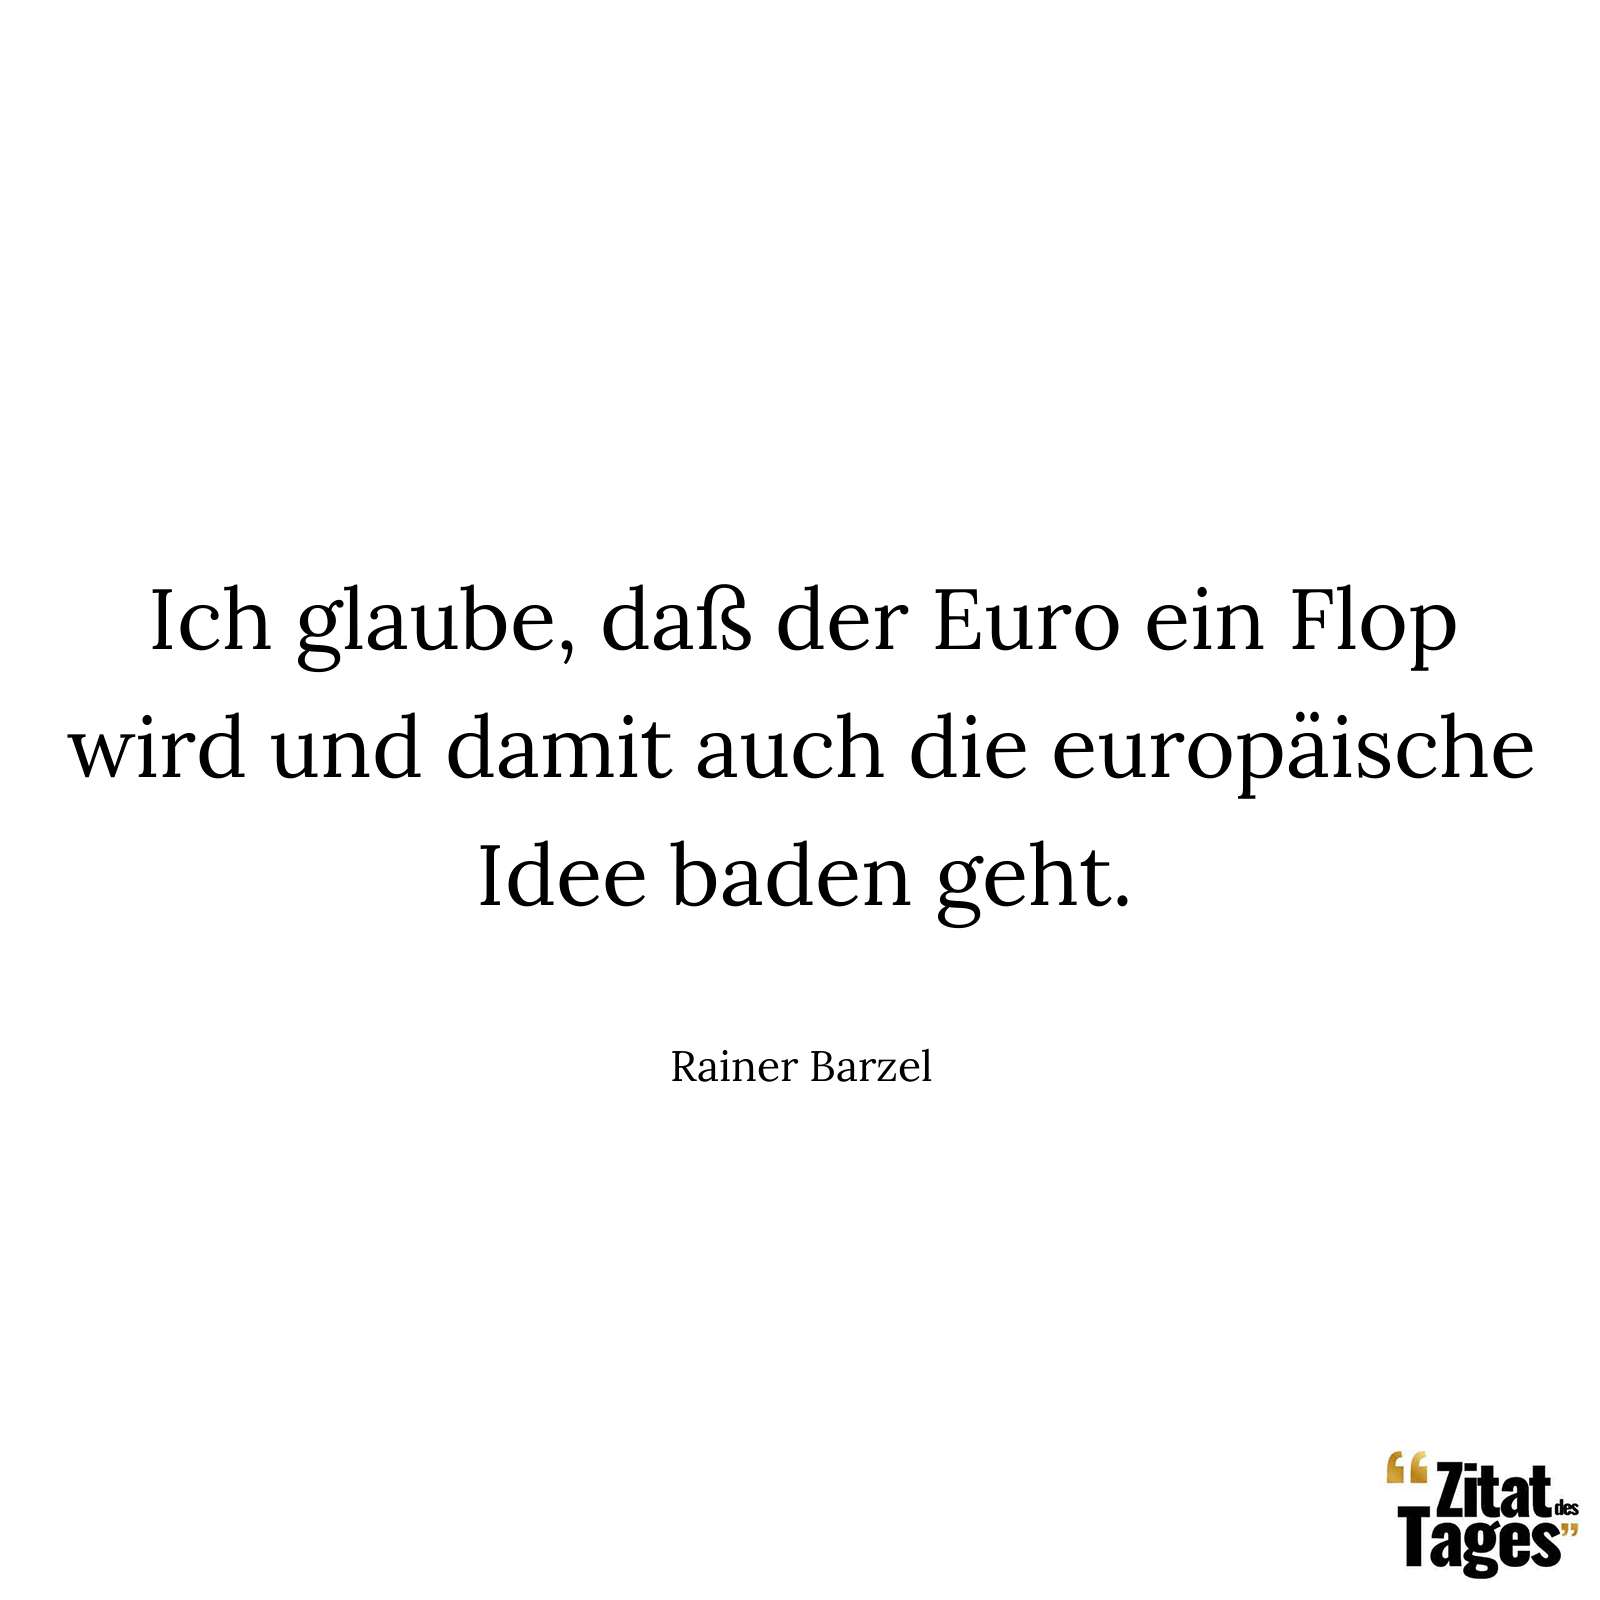 Ich glaube, daß der Euro ein Flop wird und damit auch die europäische Idee baden geht. - Rainer Barzel